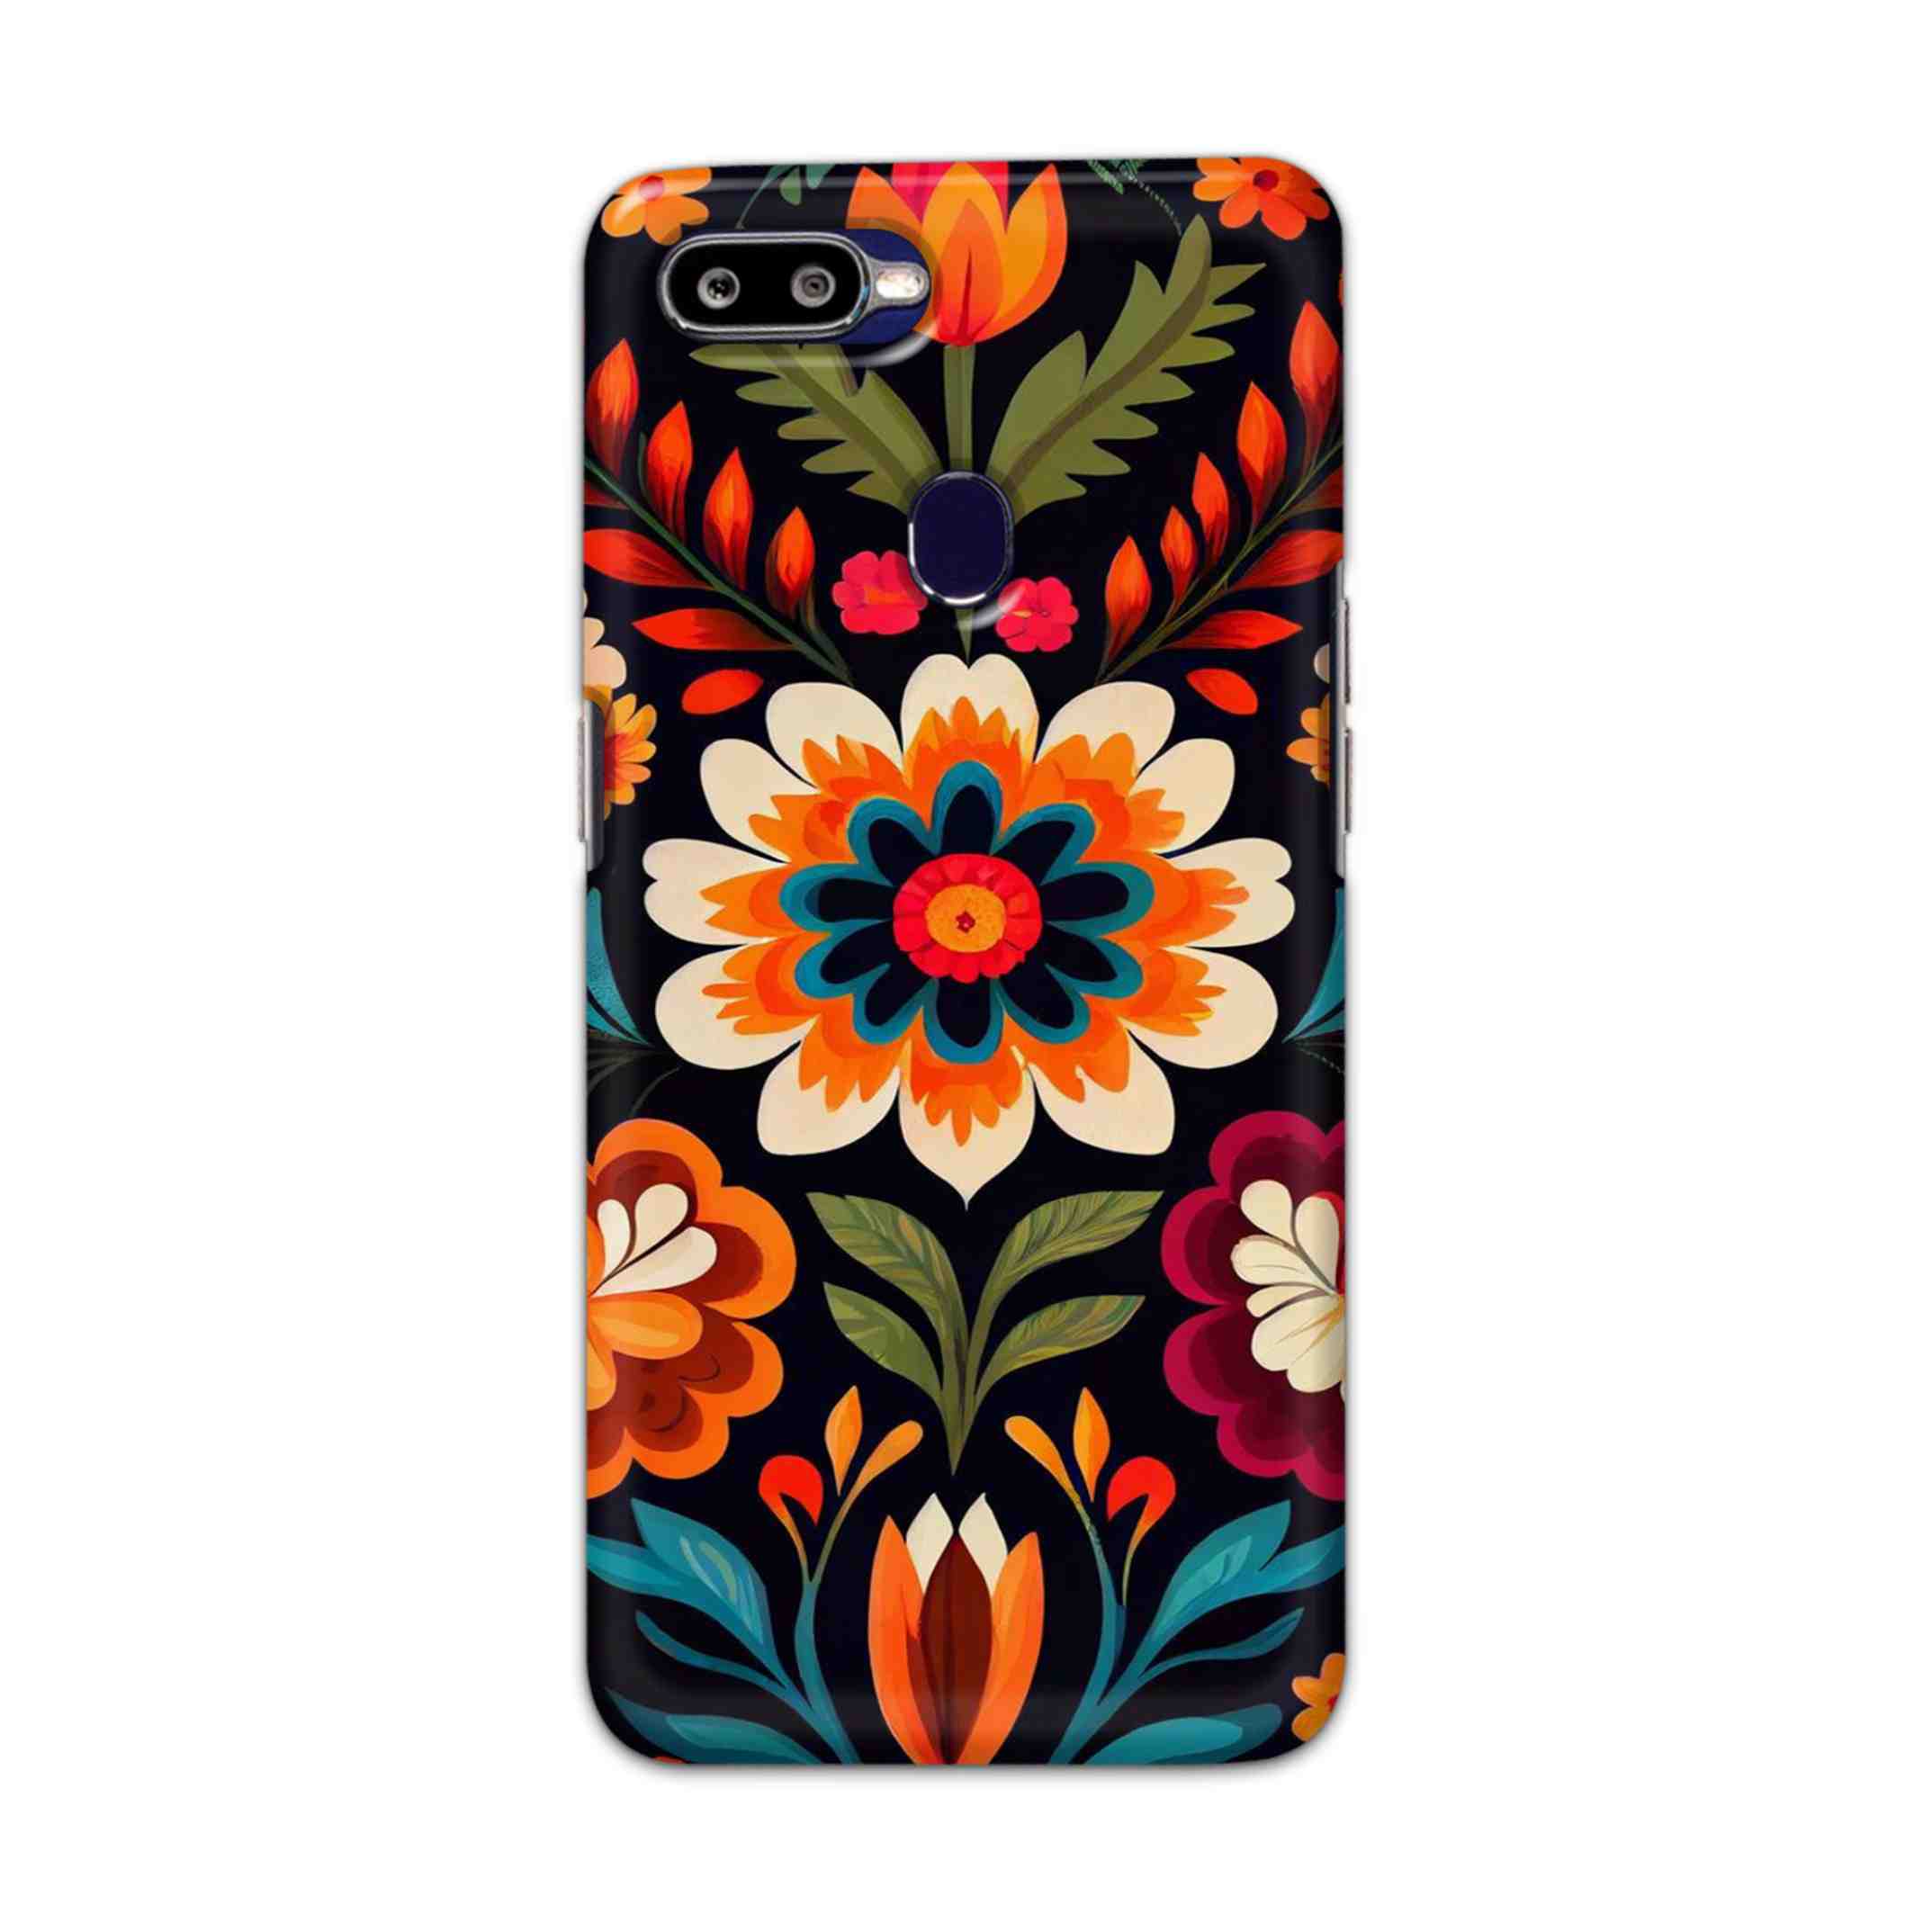 Buy Flower Hard Back Mobile Phone Case/Cover For Oppo F9 / F9 Pro Online